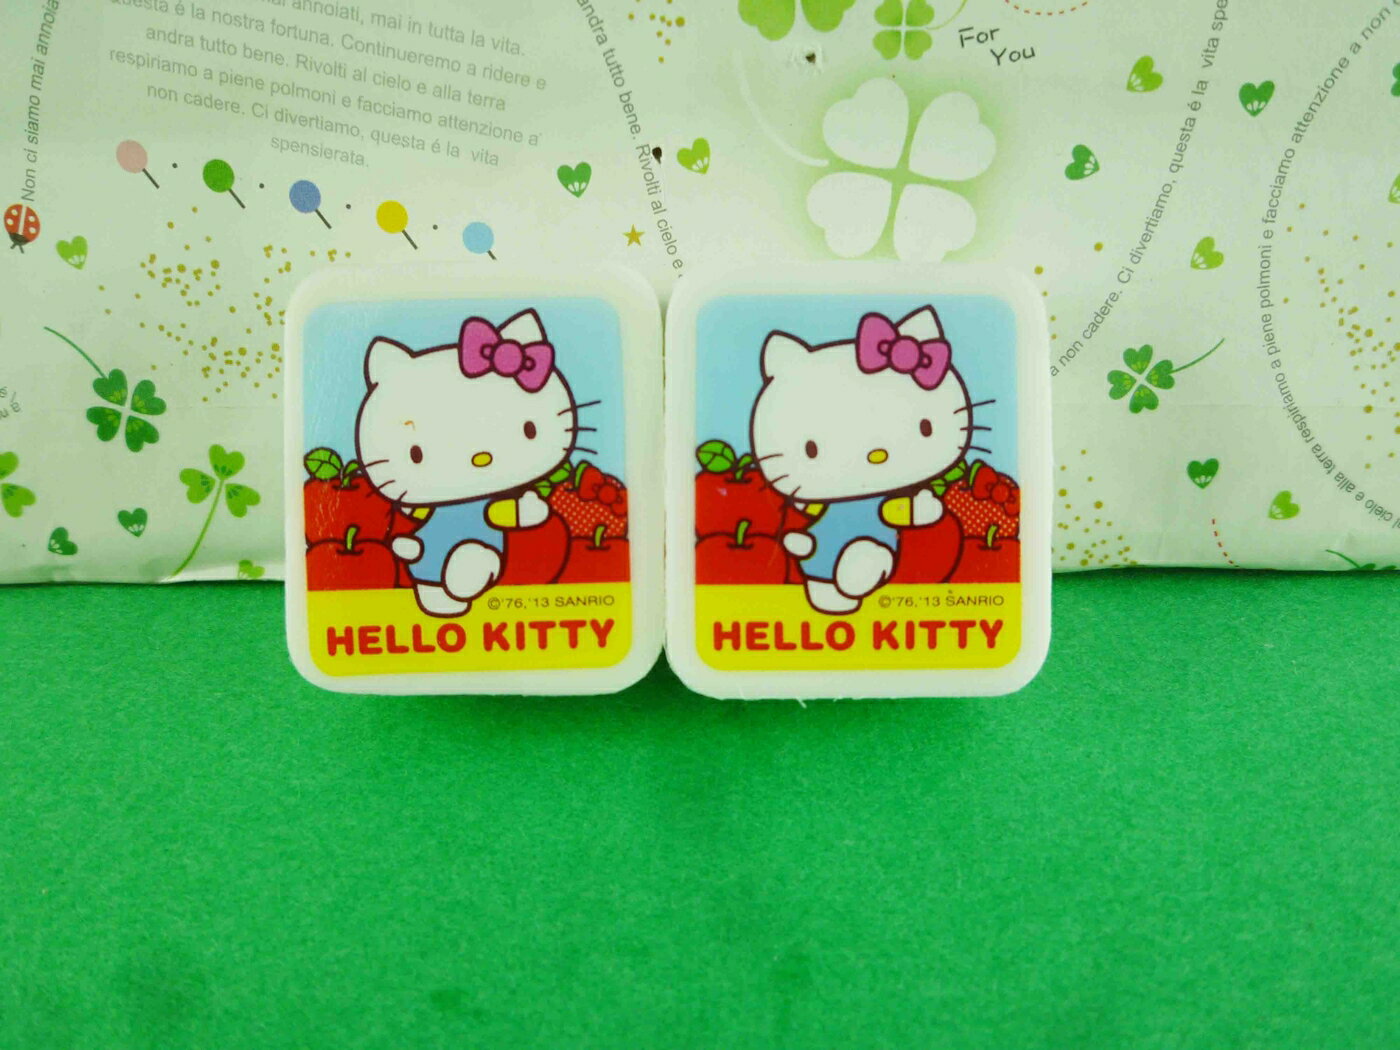 【震撼精品百貨】Hello Kitty 凱蒂貓 橡皮擦組-2入方蘋果圖案 震撼日式精品百貨